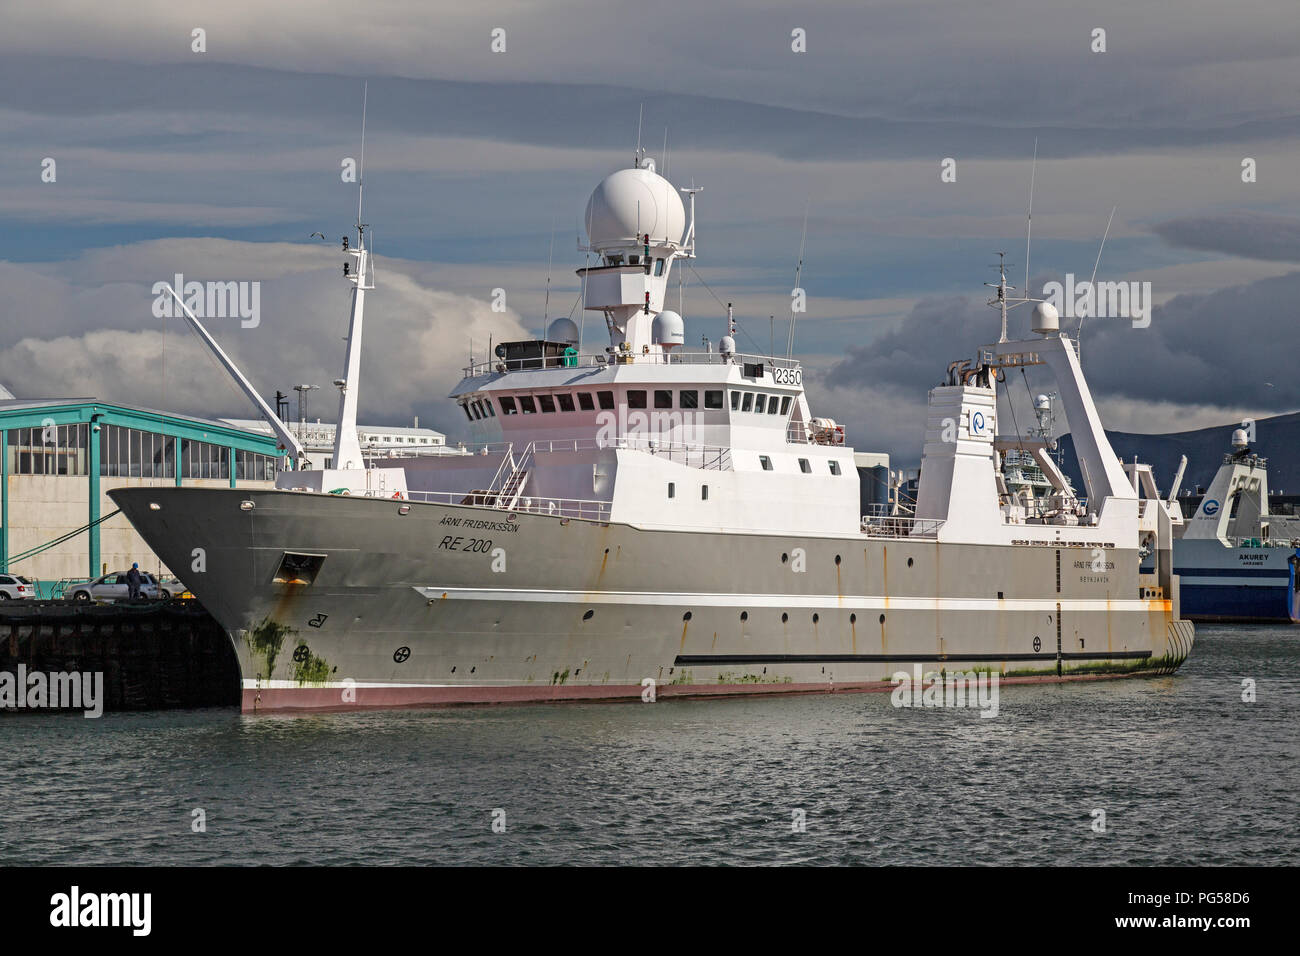 Le navire de patrouille des pêches islandais Arni 'Fredriksson'. Construit en 2000. Dans la marina à Reykjavik en Islande. Banque D'Images